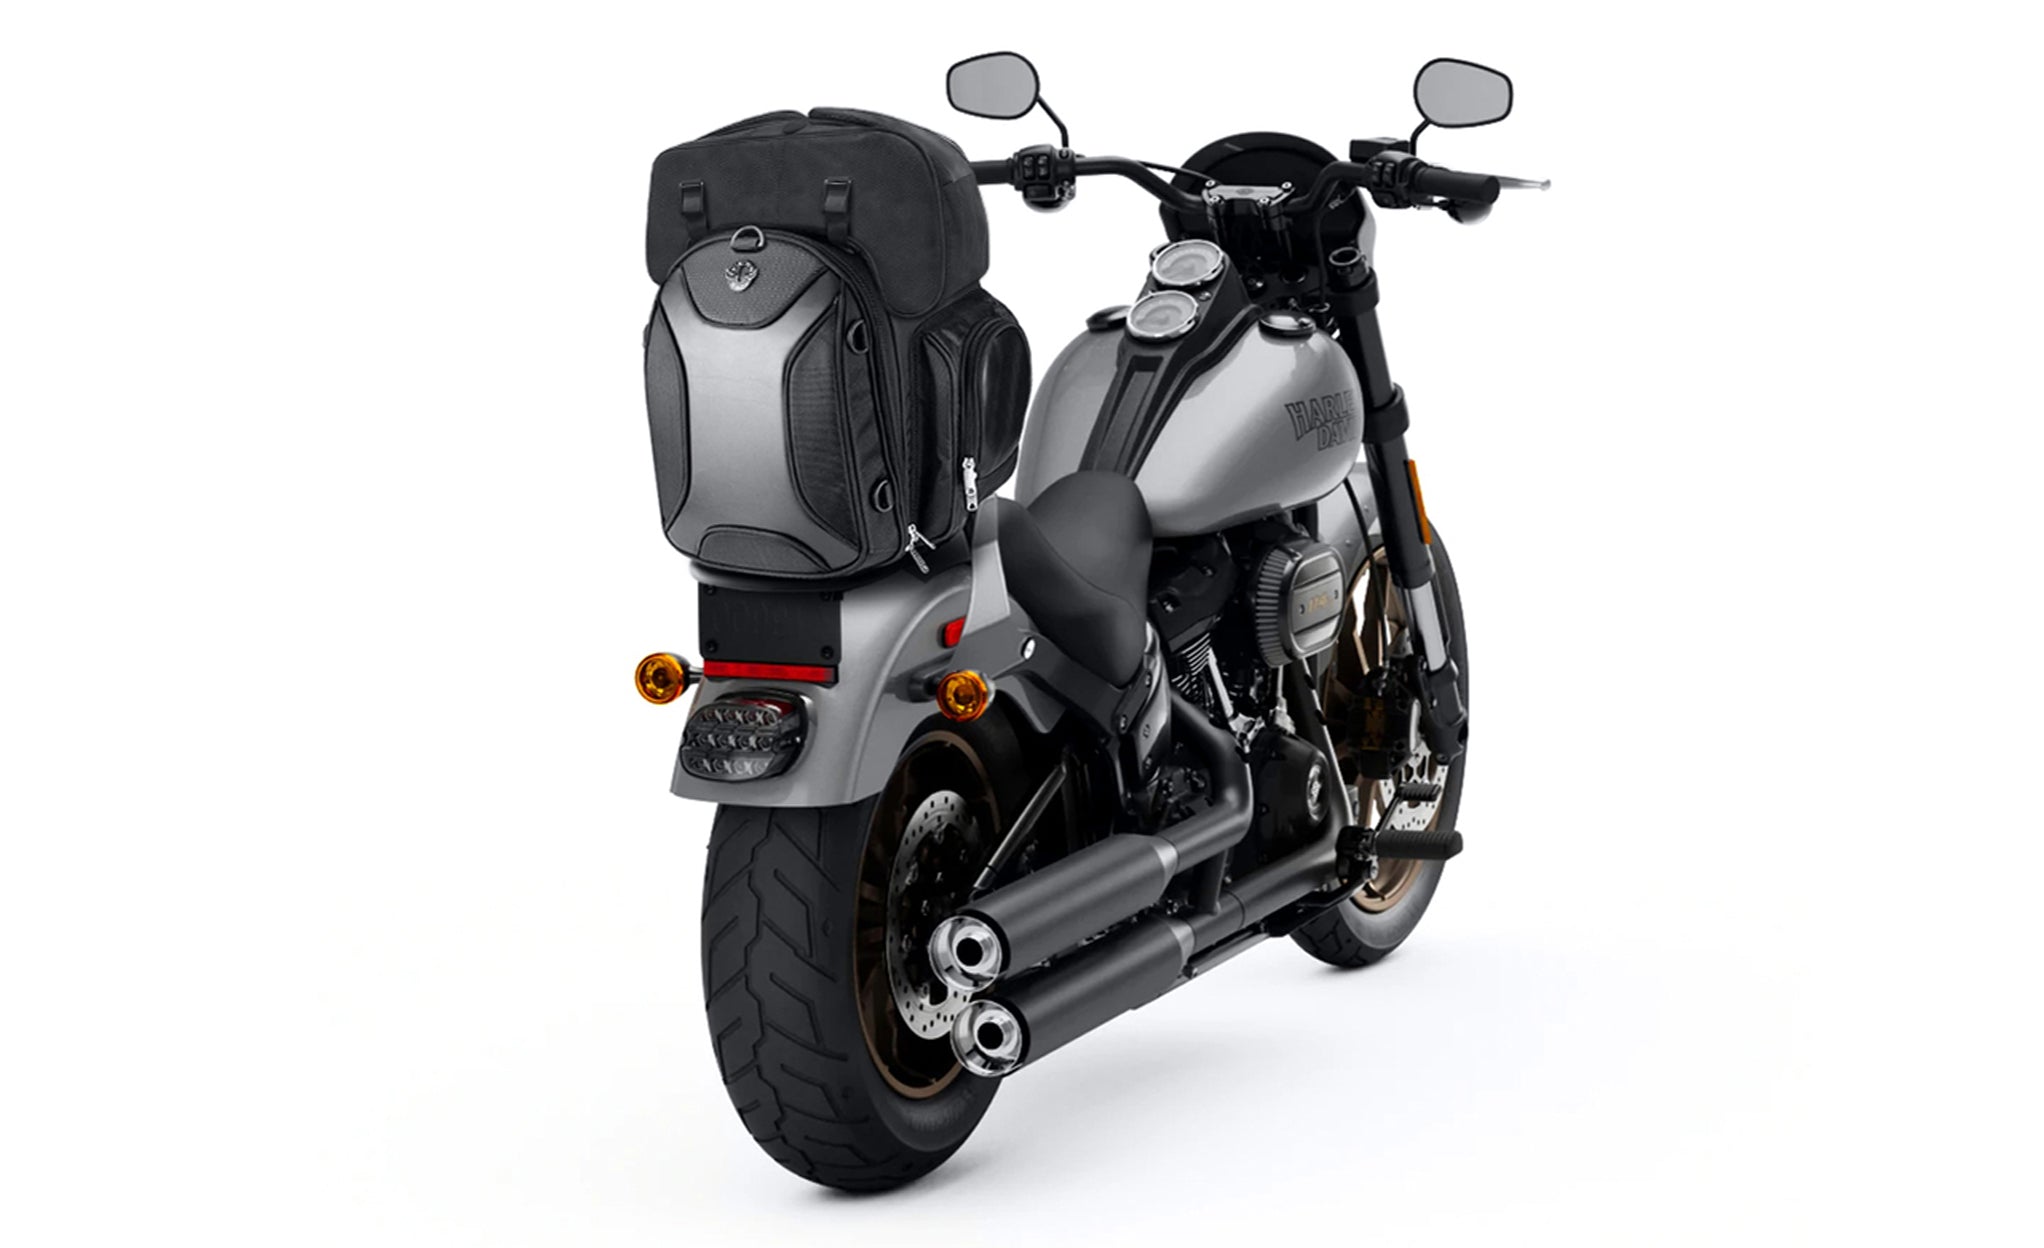 Viking Dagr Extra Large Motorcycle Sissy Bar Bag Bag on Bike View @expand